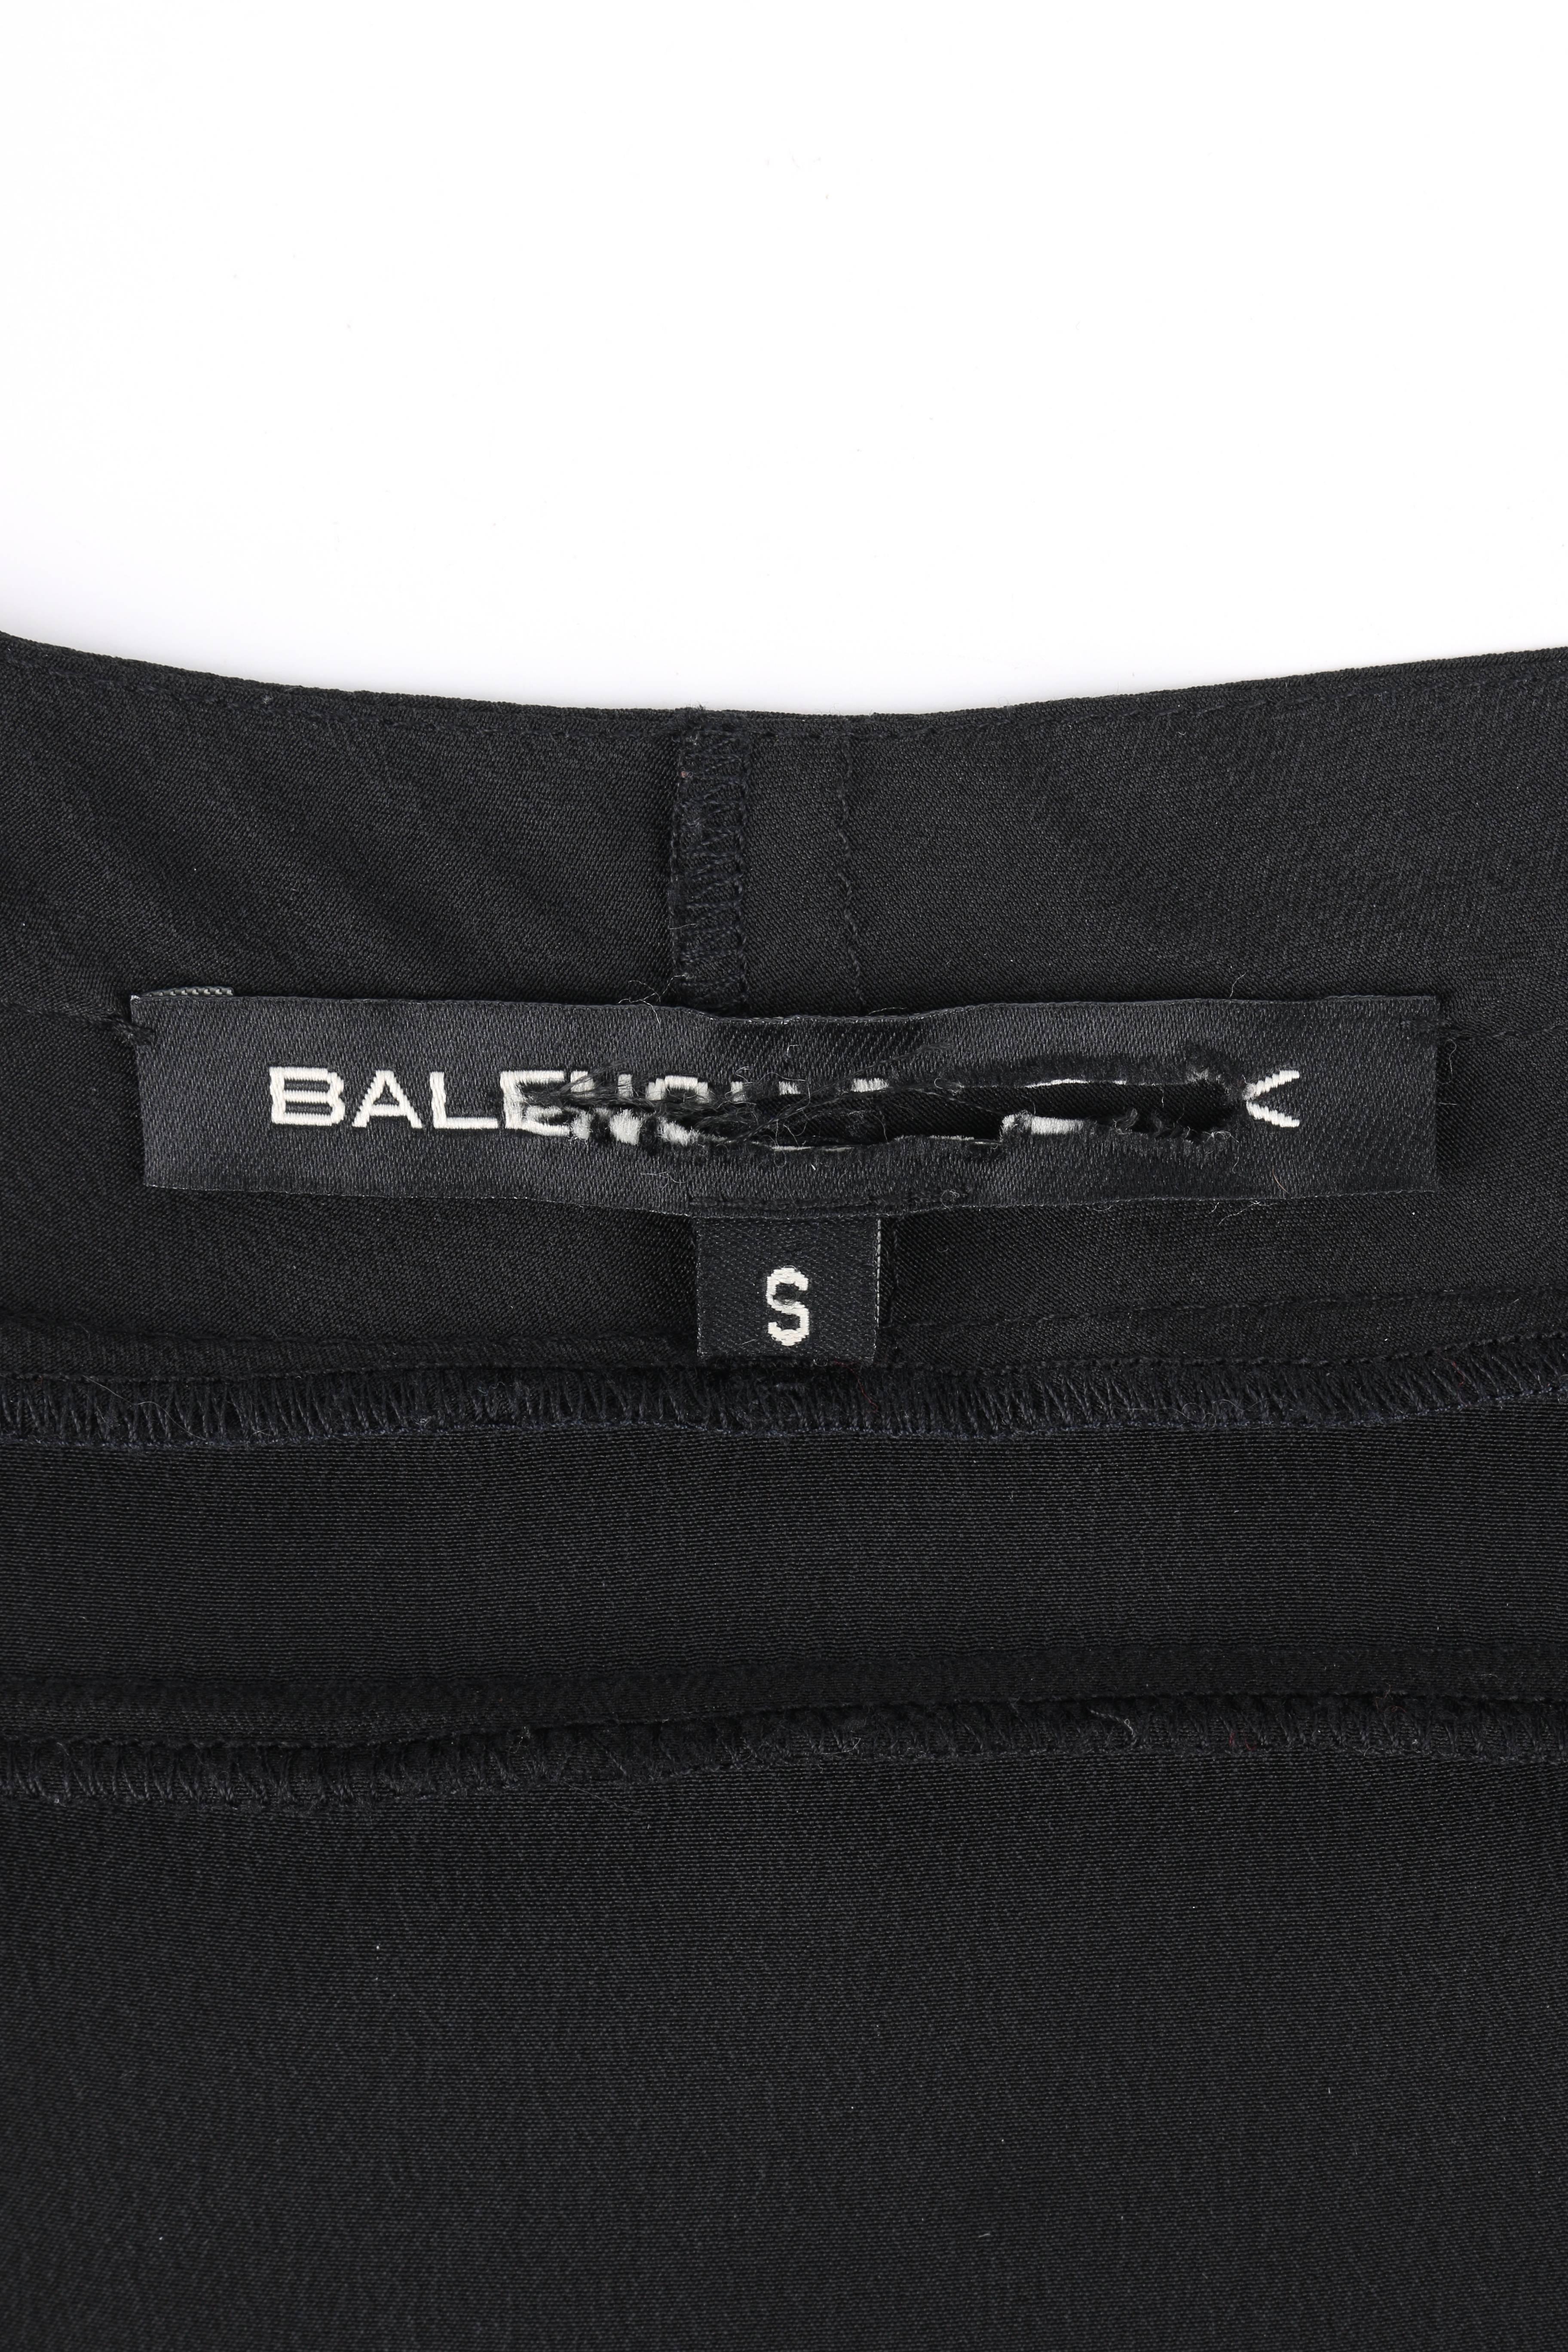 BALENCIAGA A/W 2009 Black Silk Asymmetrical Draped Button Front Blouse Top 5